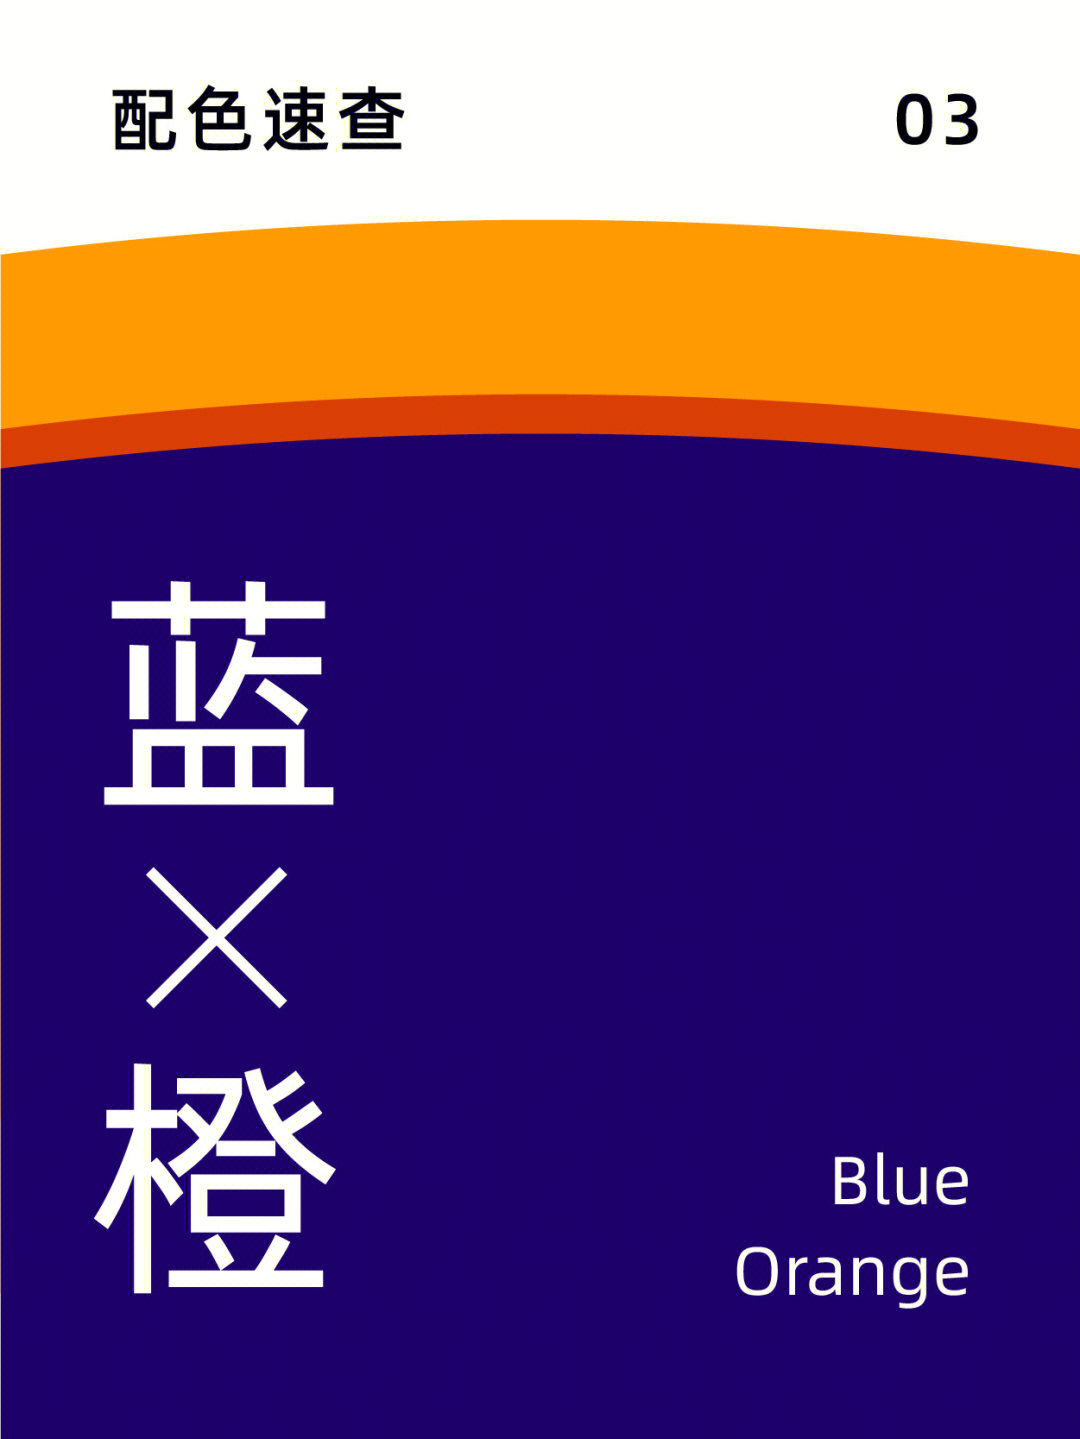 蓝橙补色图片